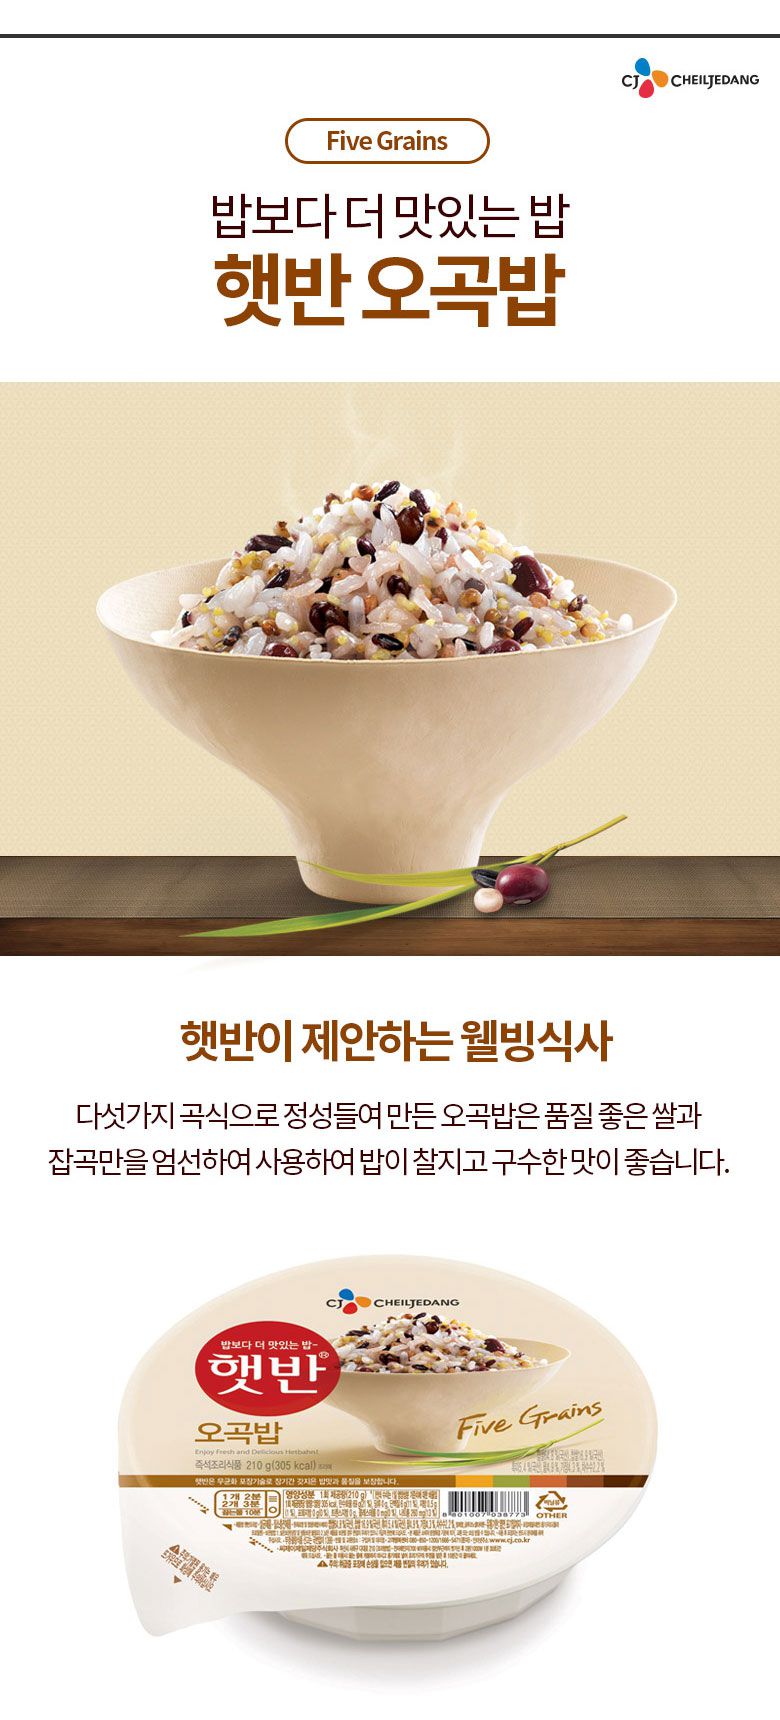 韓國食品-[CJ] 即食飯[五穀] 210g 24件 (原箱優惠)